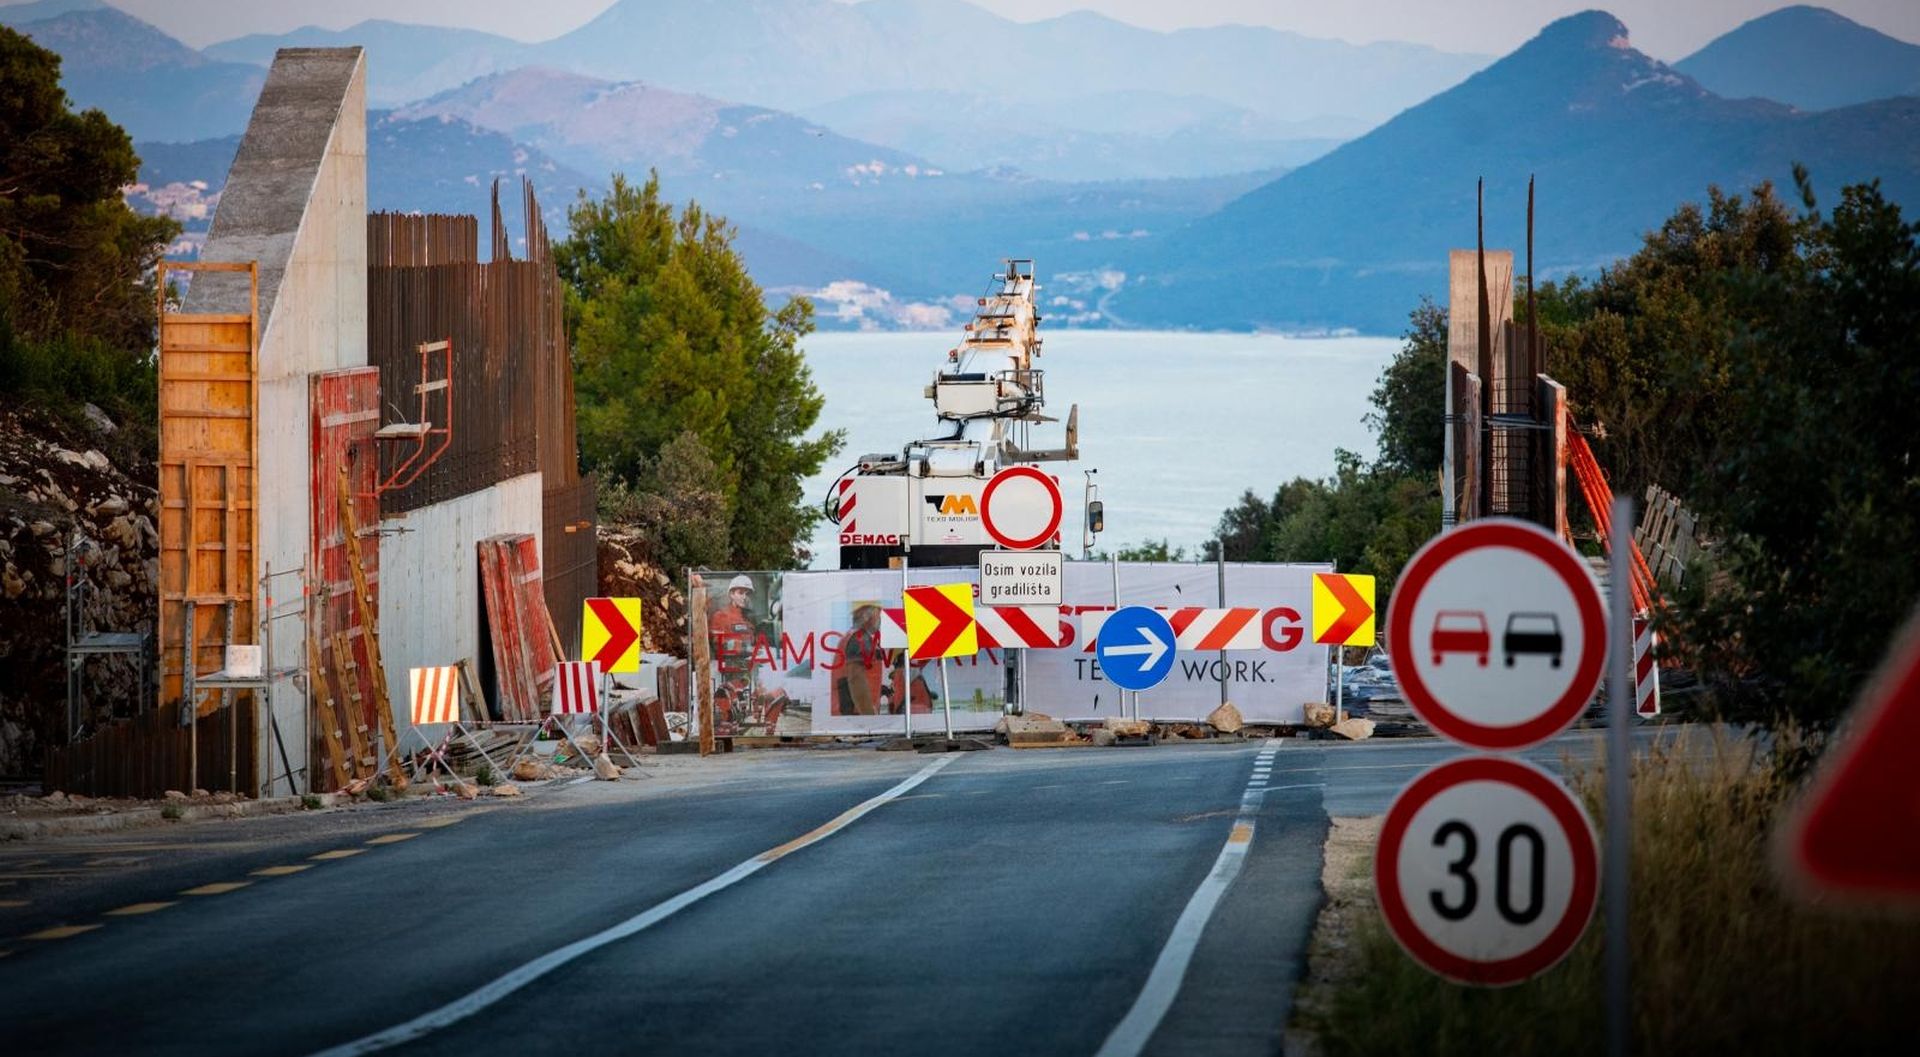 16.09.2020., Komarna - Radovi na izgradnji Peljeskog mosta i pristupnih cesta.
Photo: Milan Sabic/PIXSELL